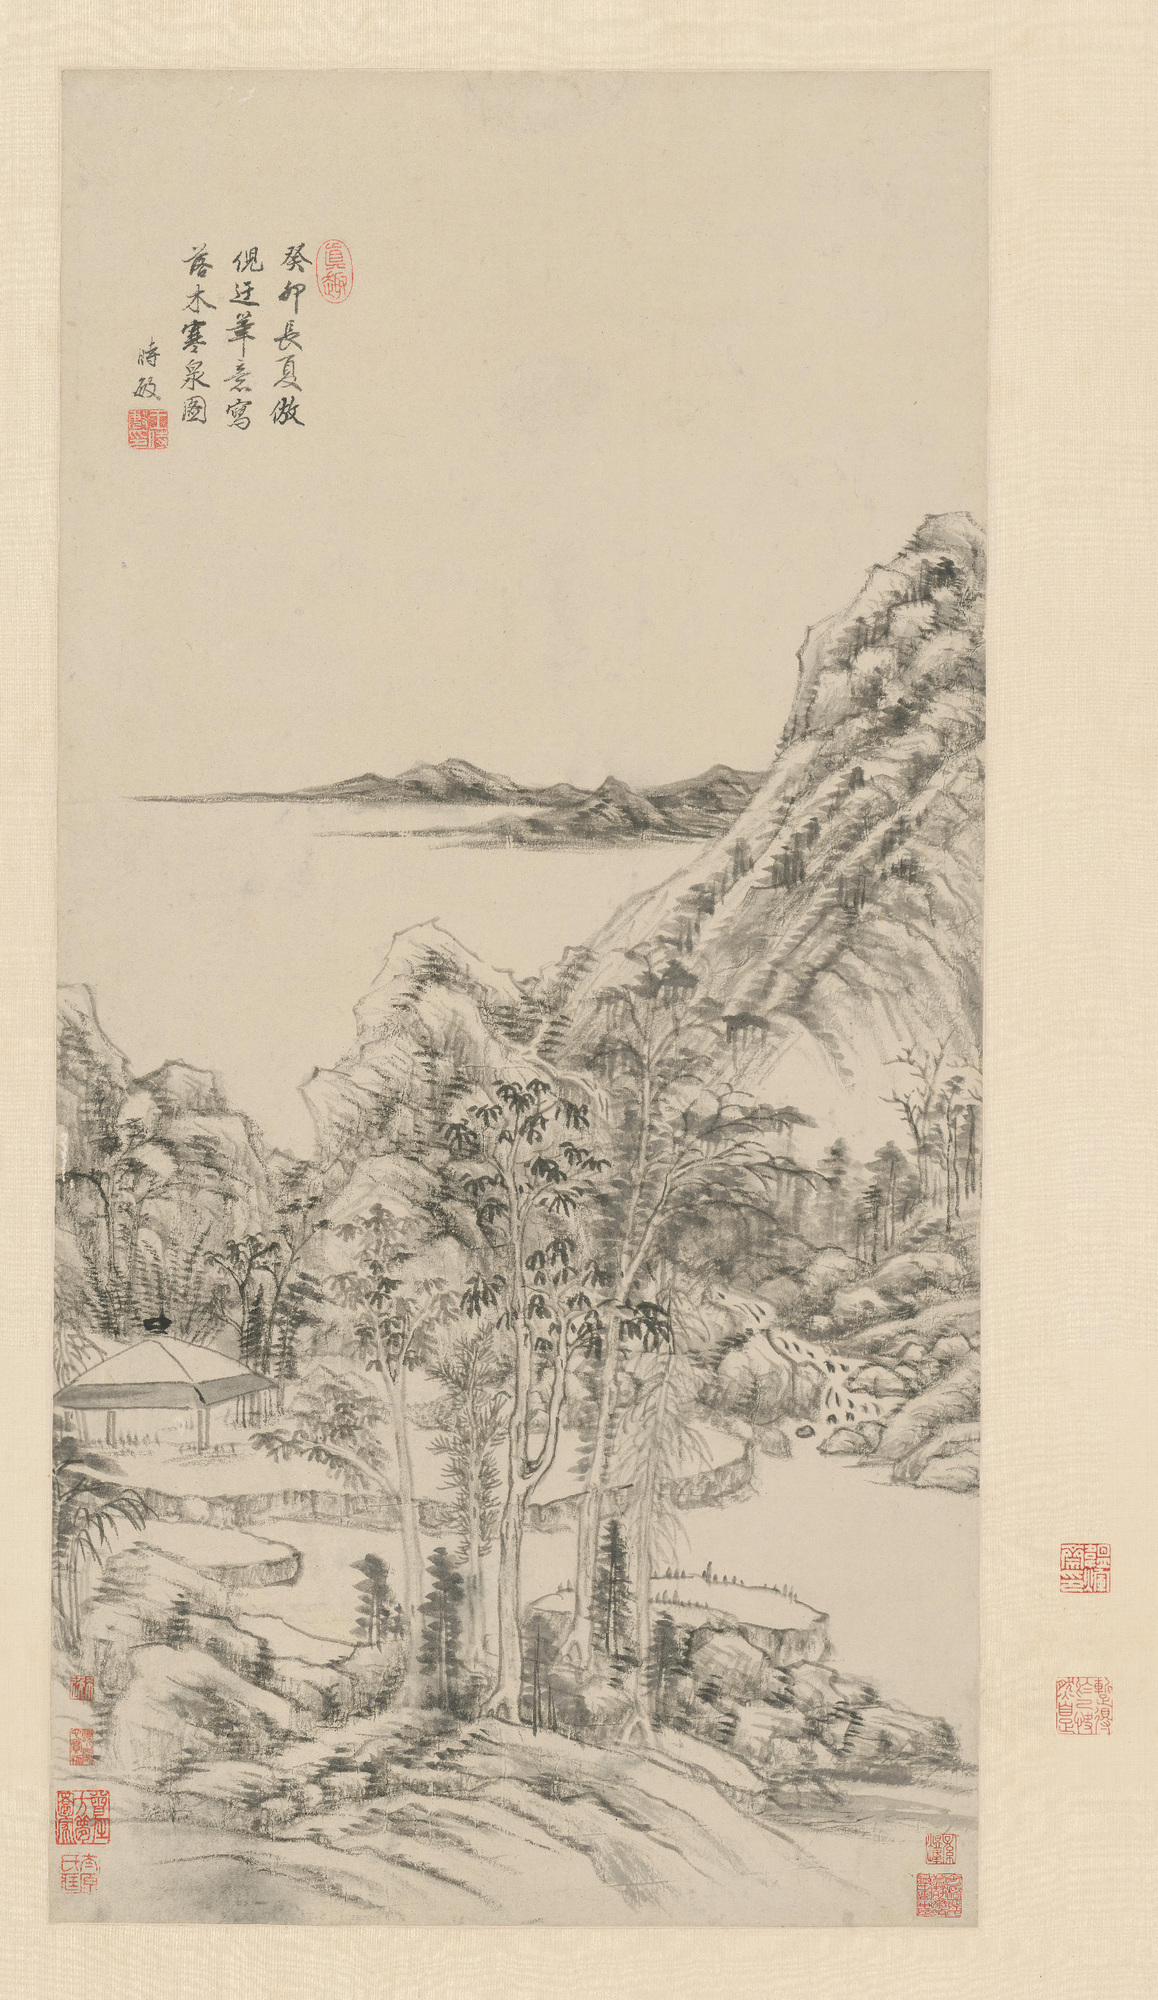 清·王时敏《落木寒泉图轴》，纸本，水墨，纵82.3厘米，横41.5厘米。现藏故宫博物院